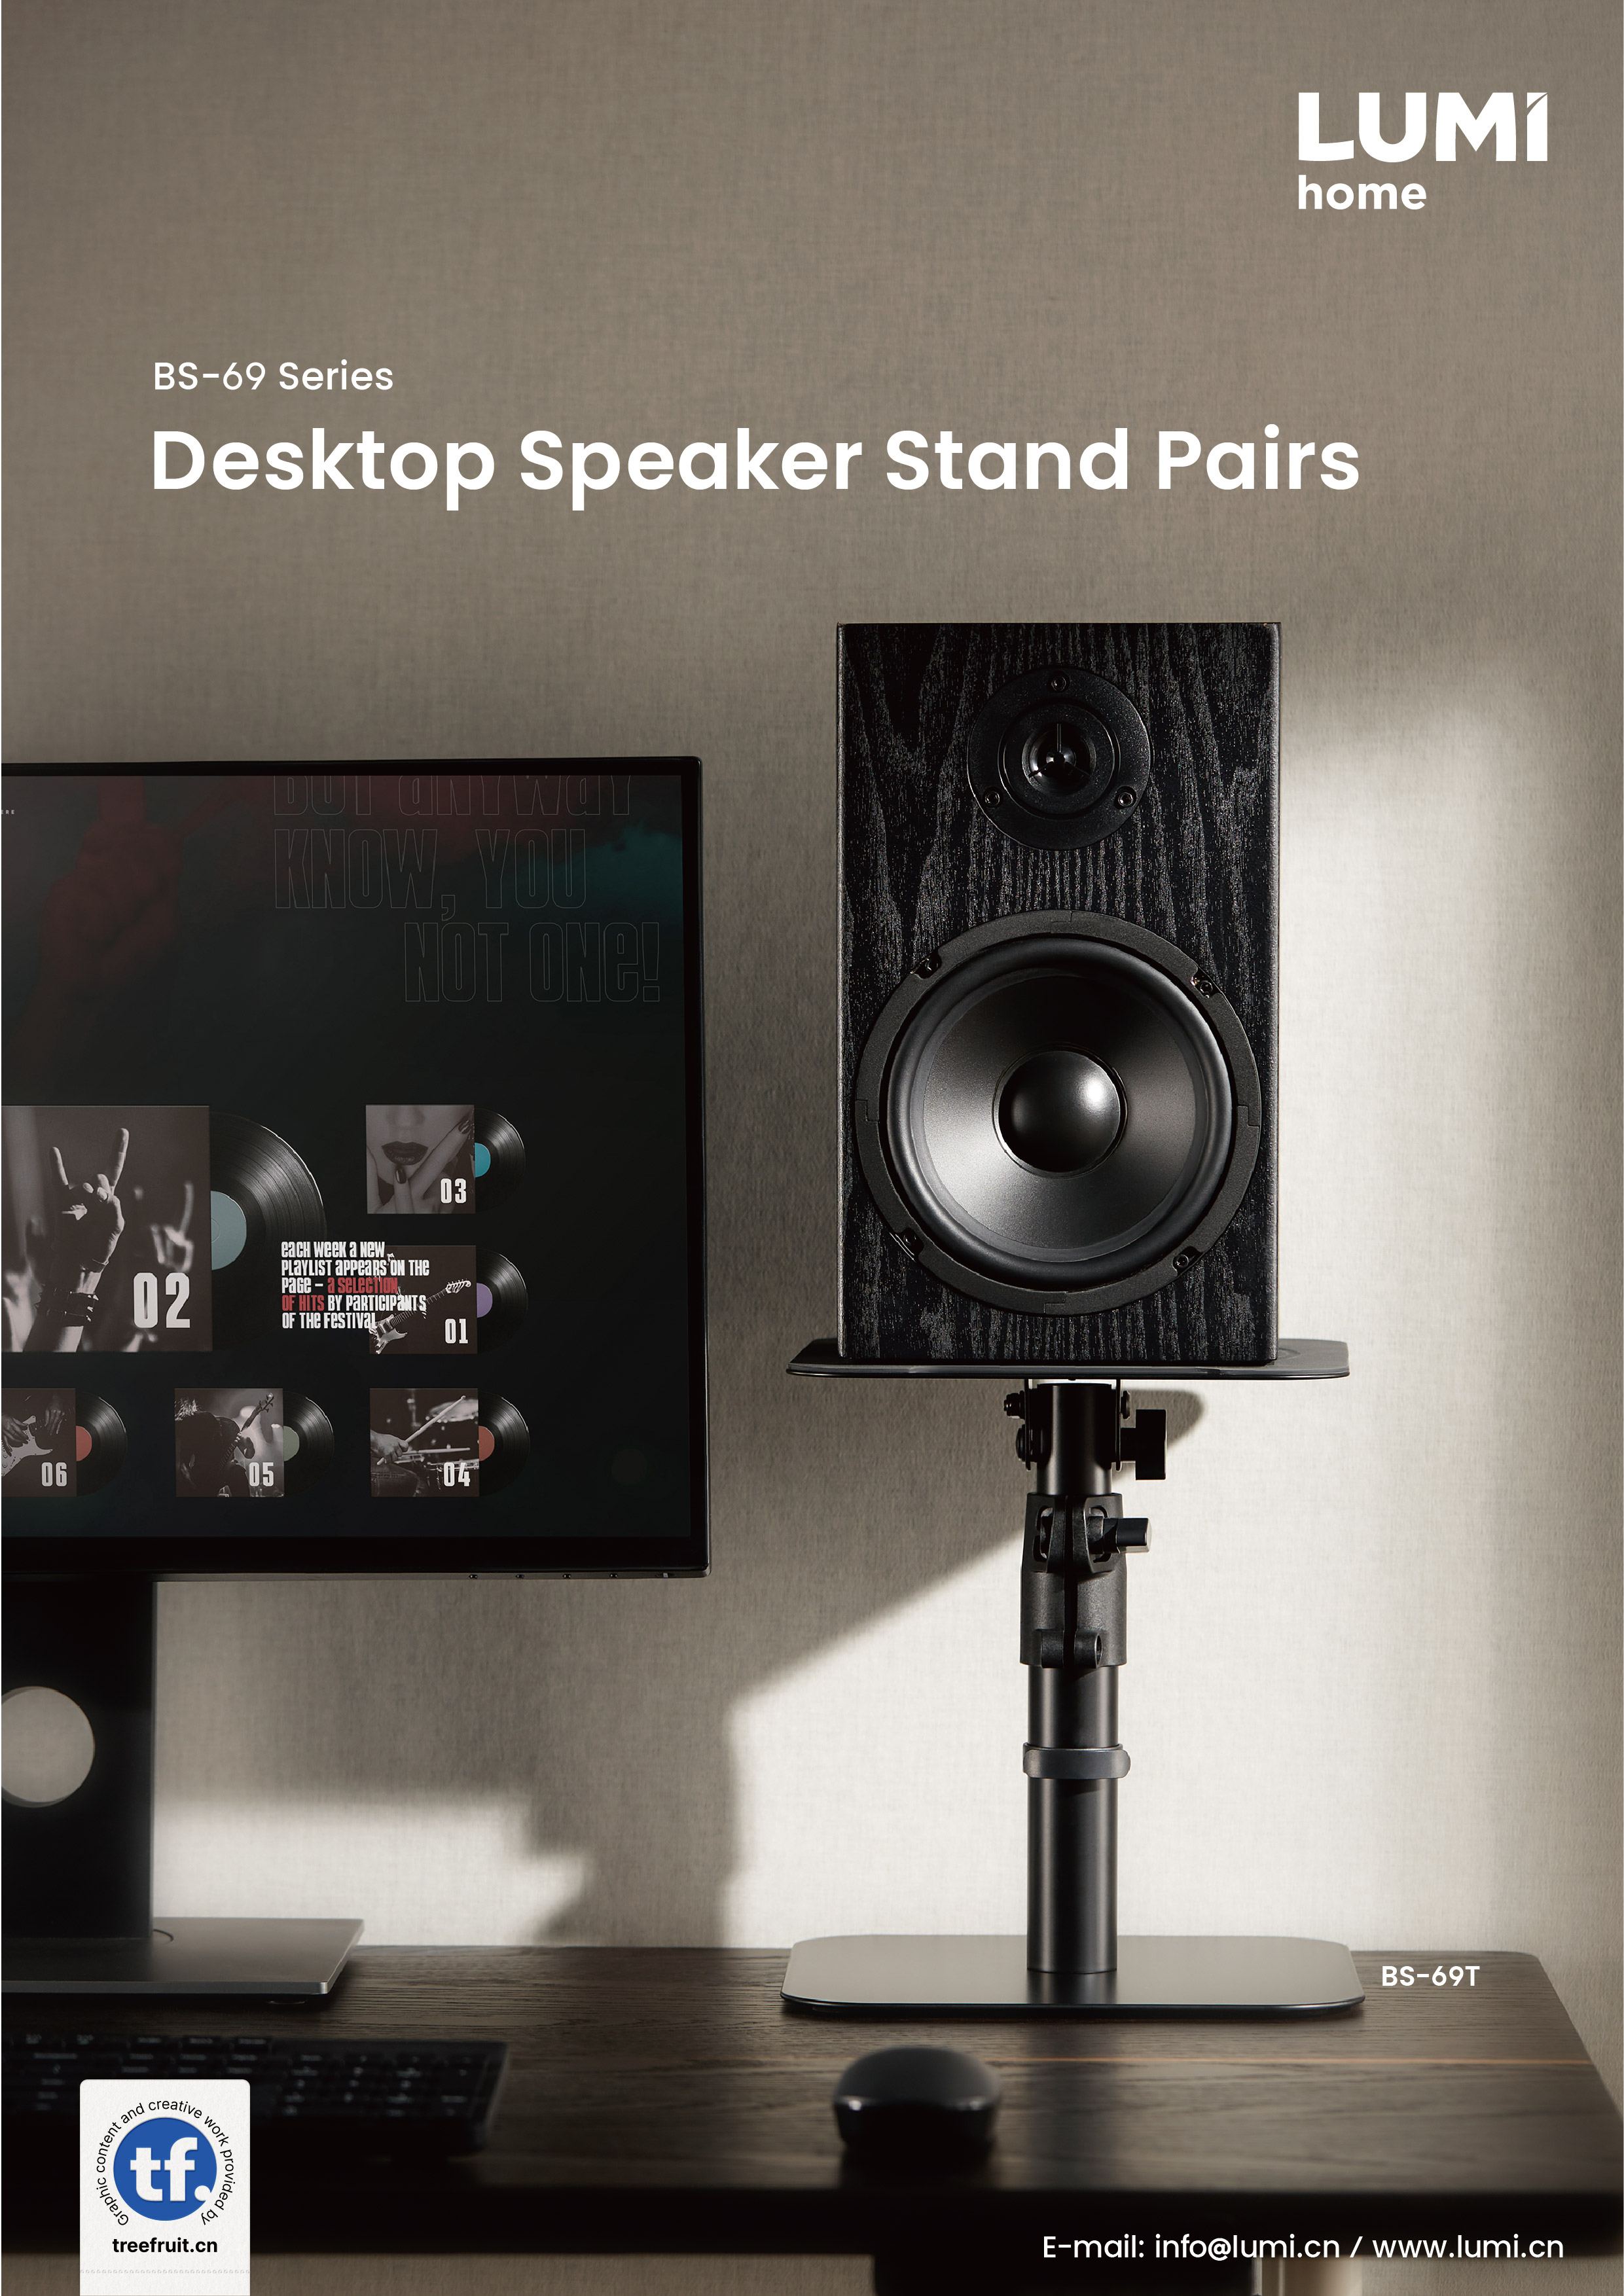 BS-69 Series Desktop Speaker Stand Pairs